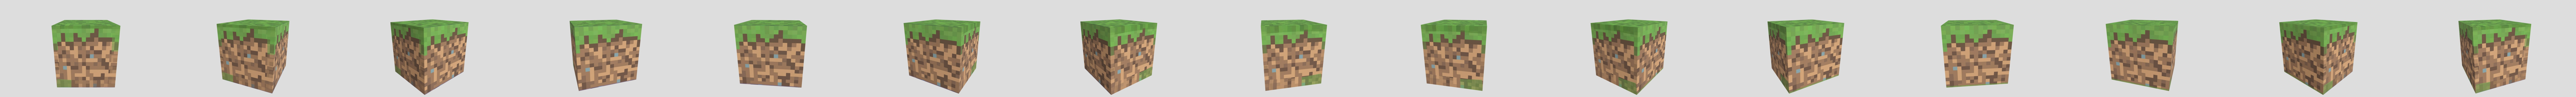 Minecraft Grass Block Texture by PsdDude on DeviantArt